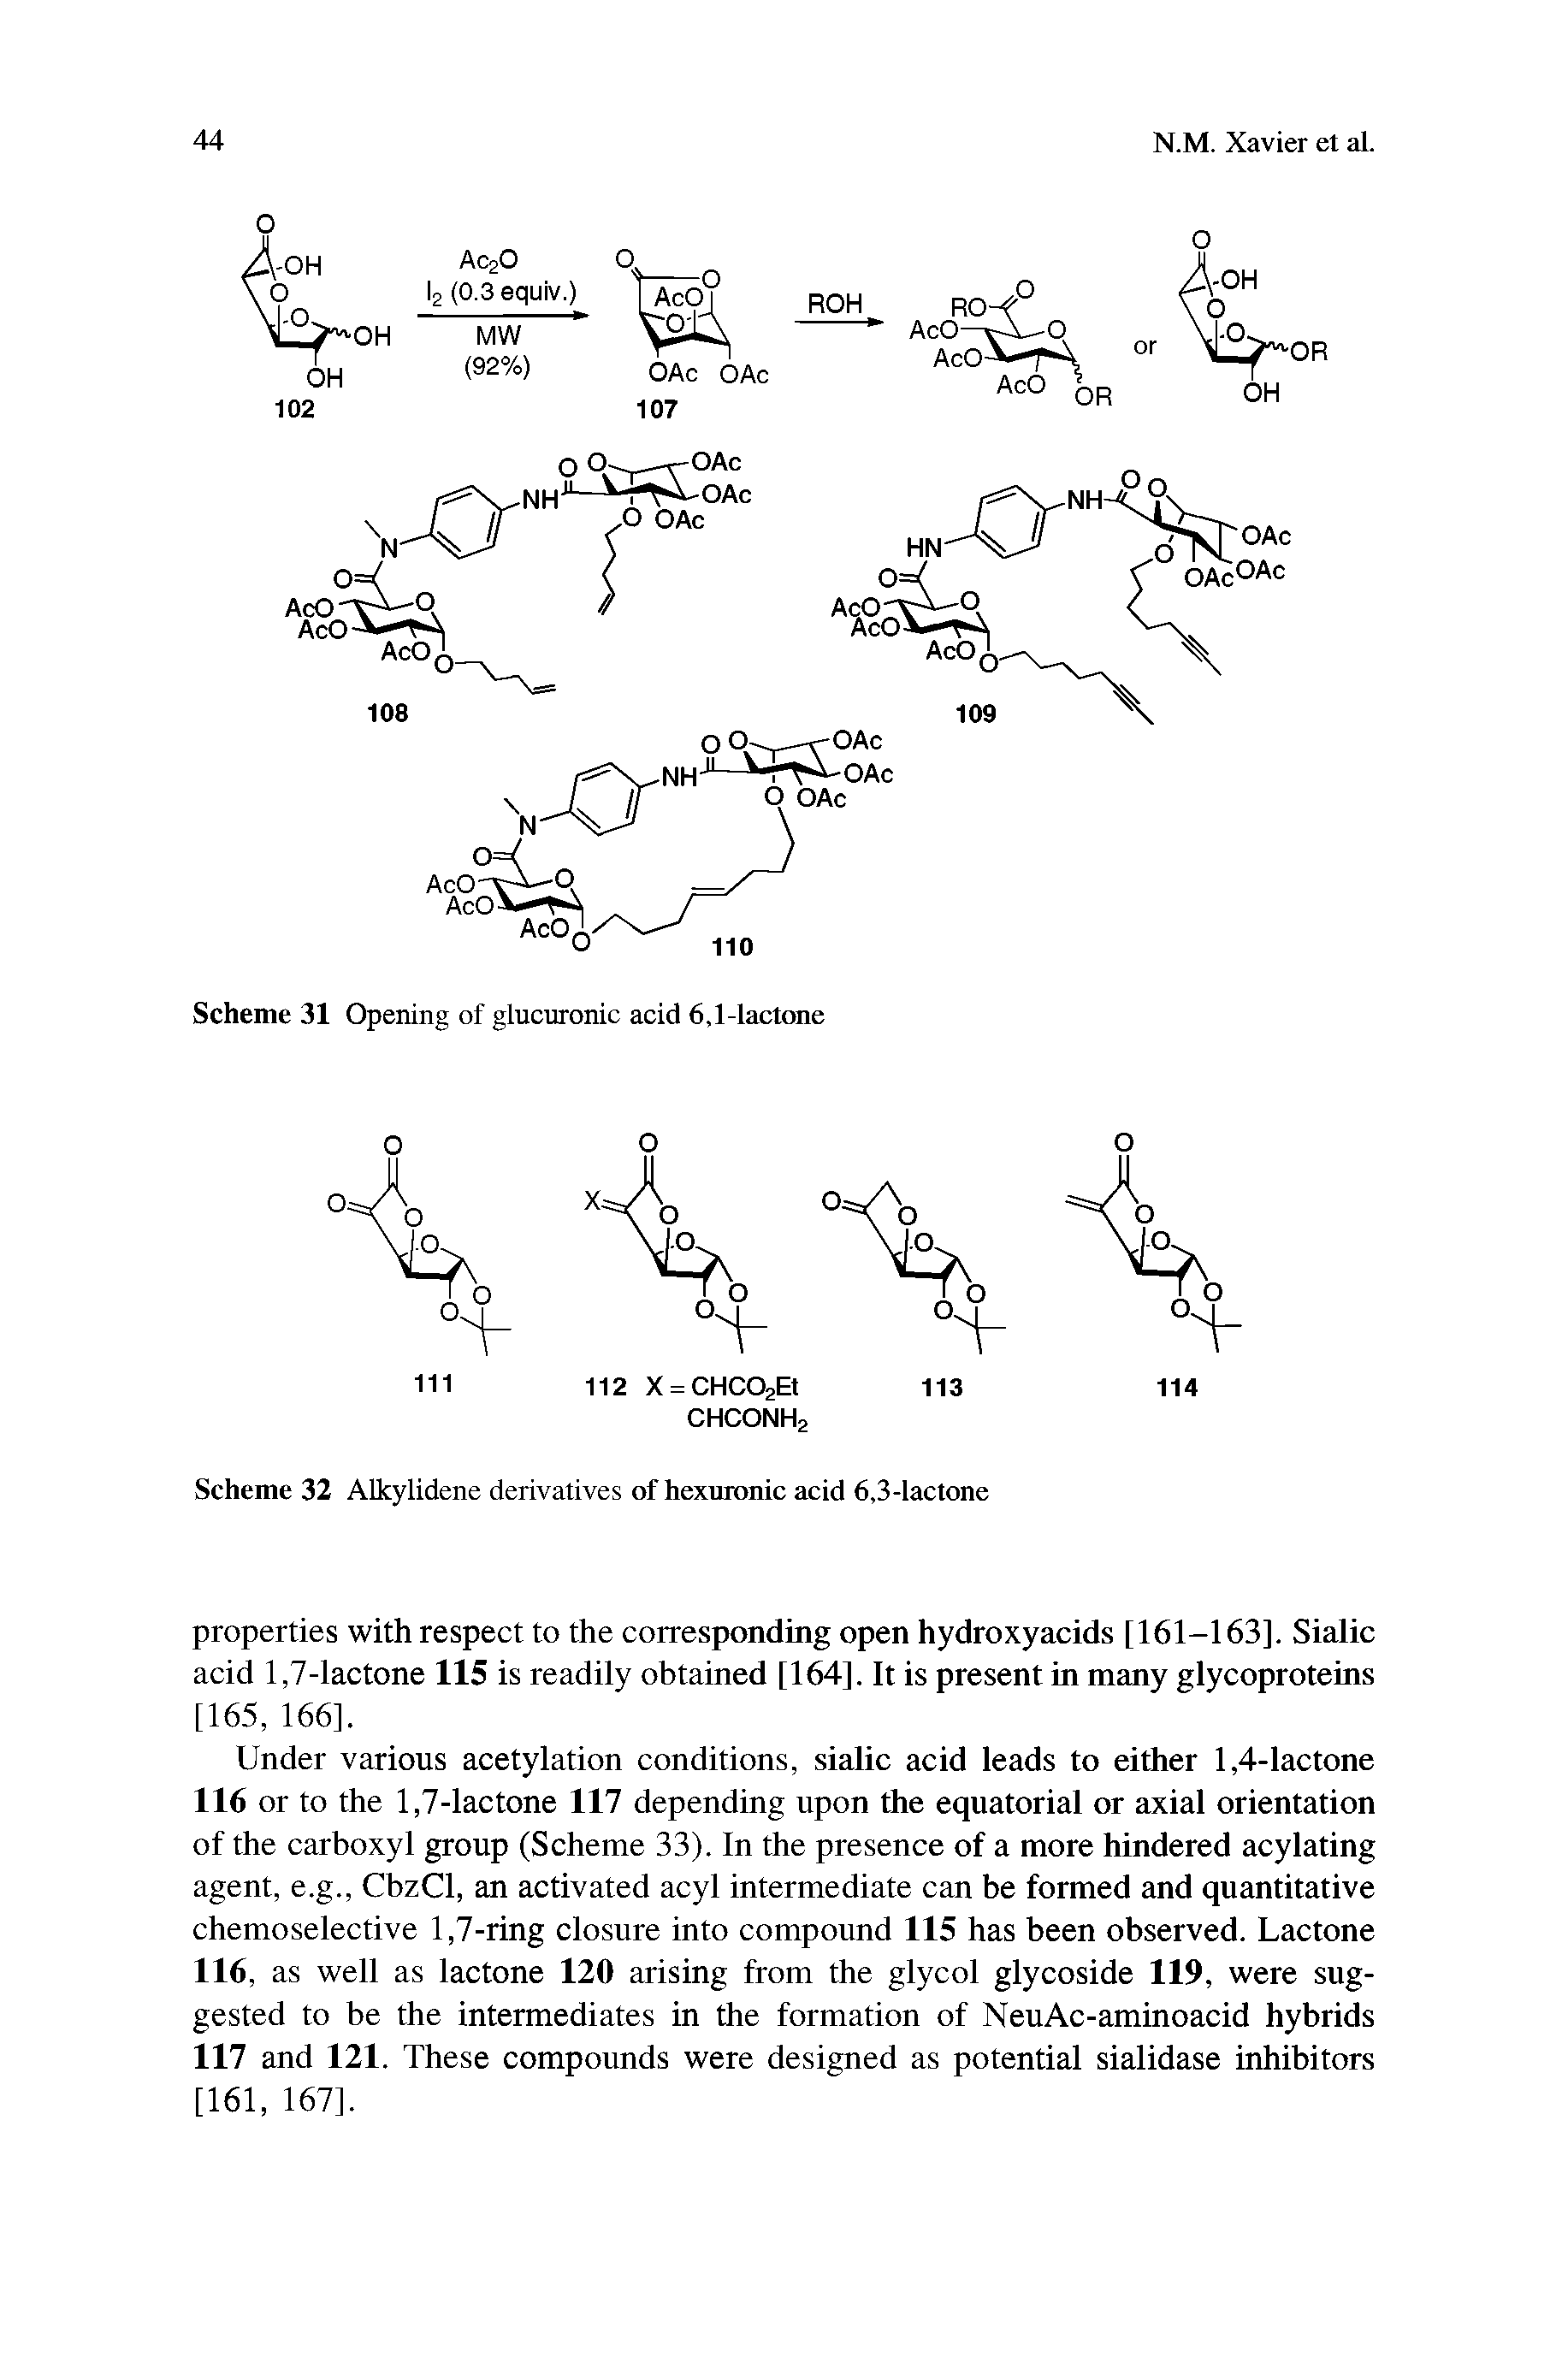 Scheme 32 ALkylidene derivatives of hexuronic acid 6,3-lactone...